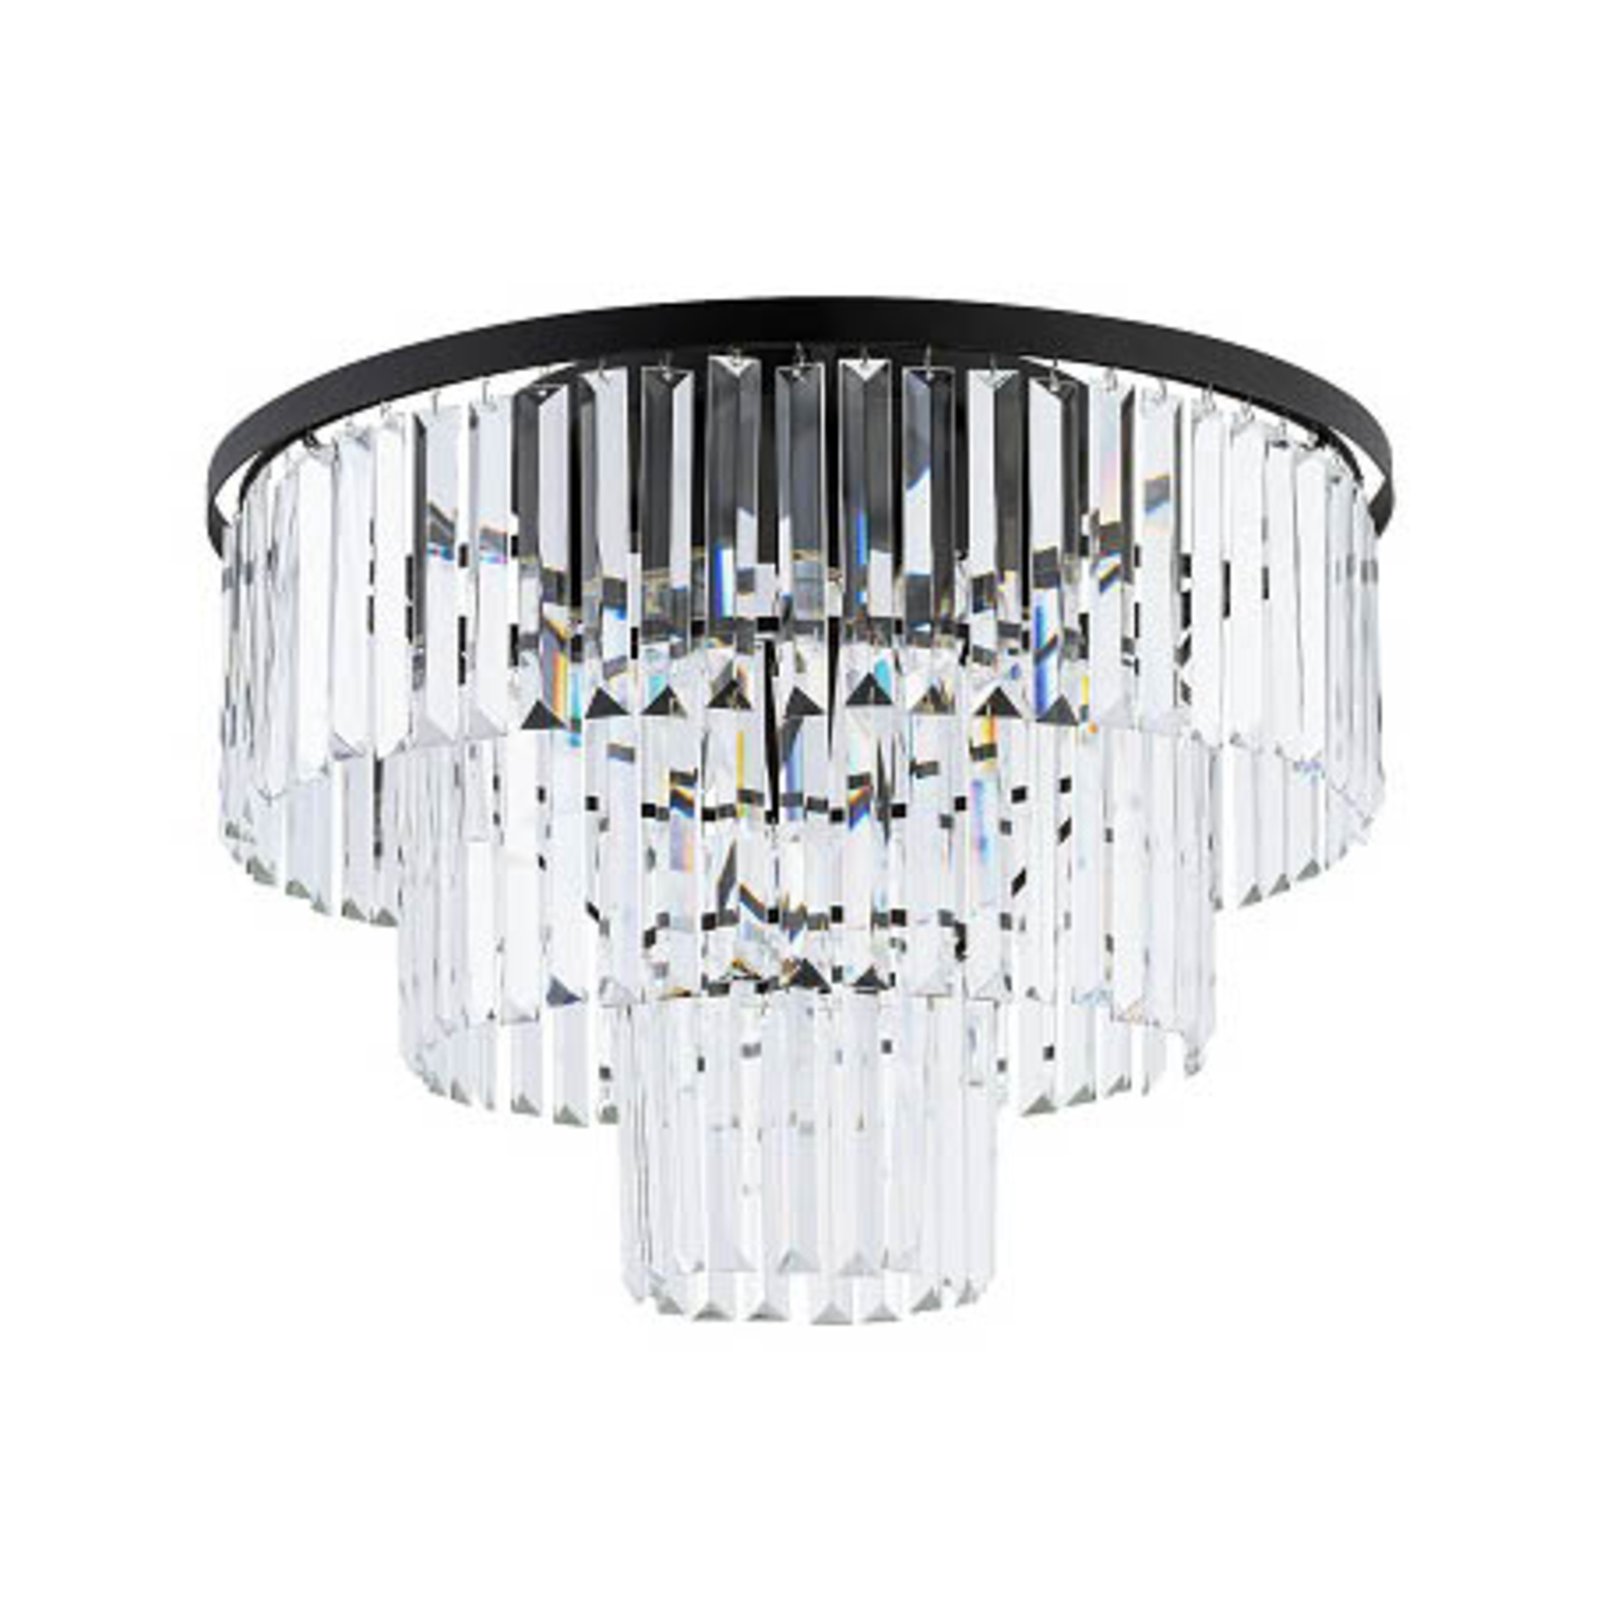 Cristal loftslampe, transparent/sort, Ø 56cm